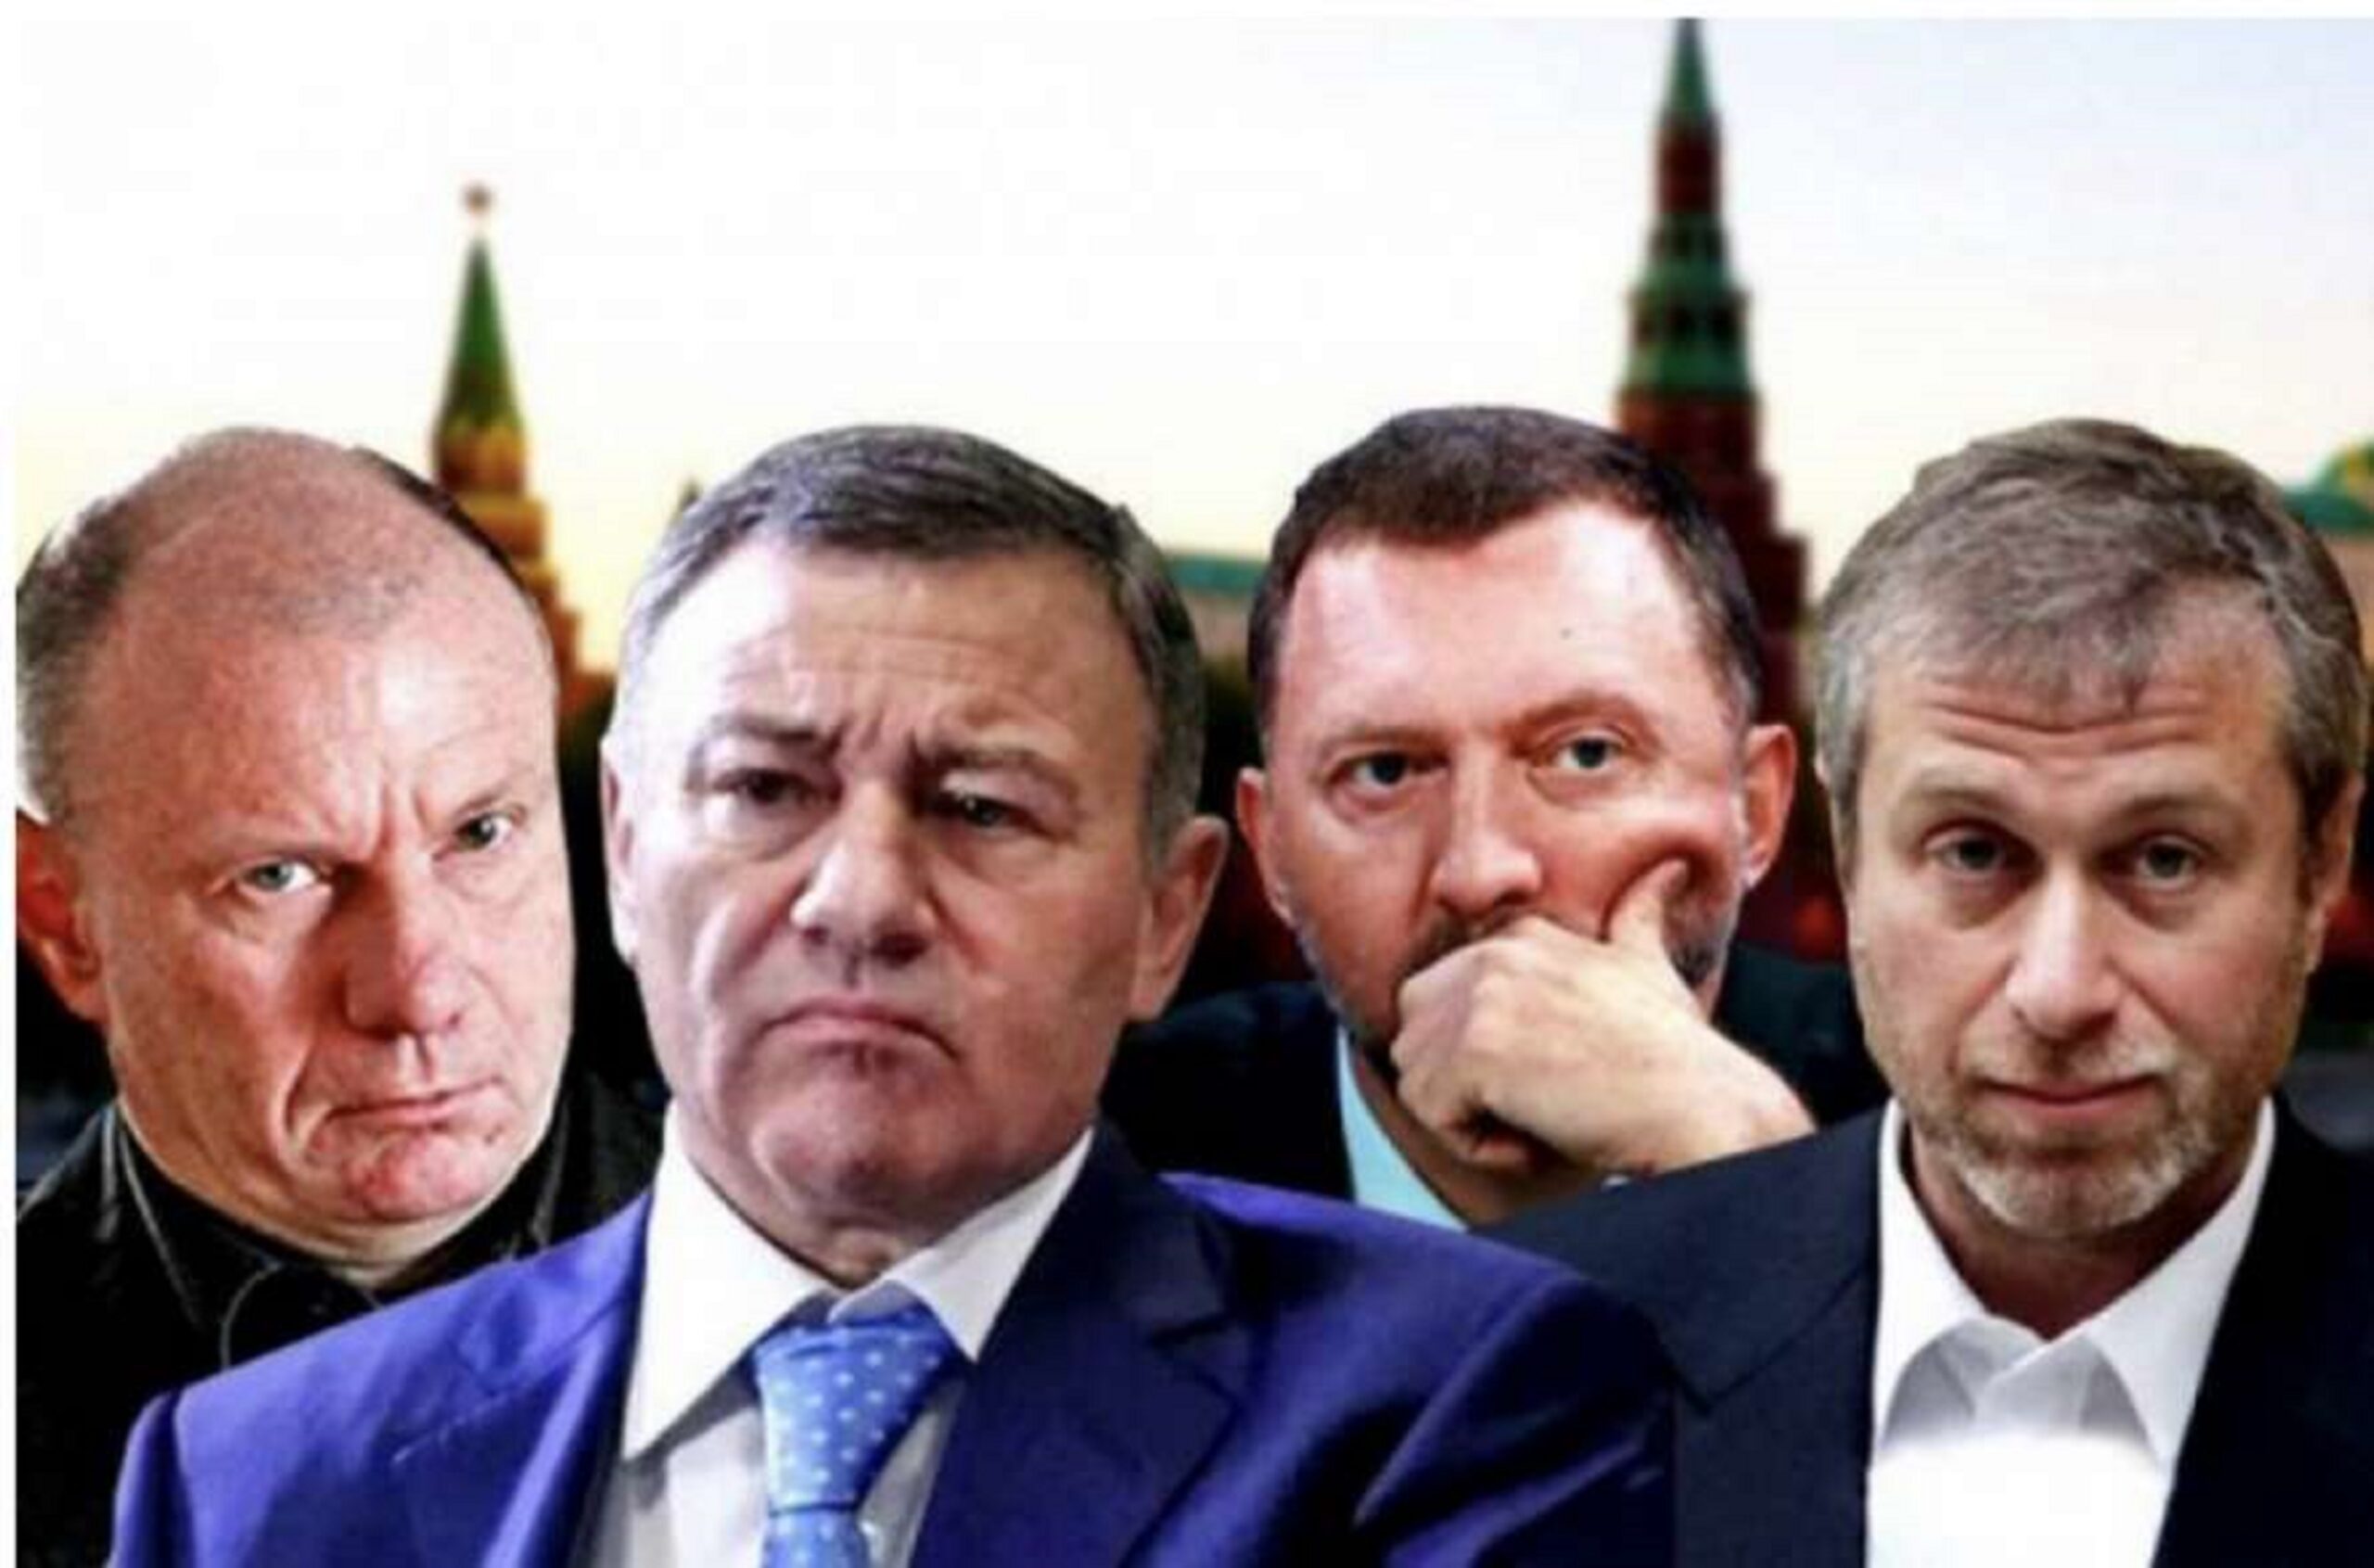 Фрідман, Ротенберги, Лісін та інші російські олігархи тепер під українськими санкціями. А що це дає?